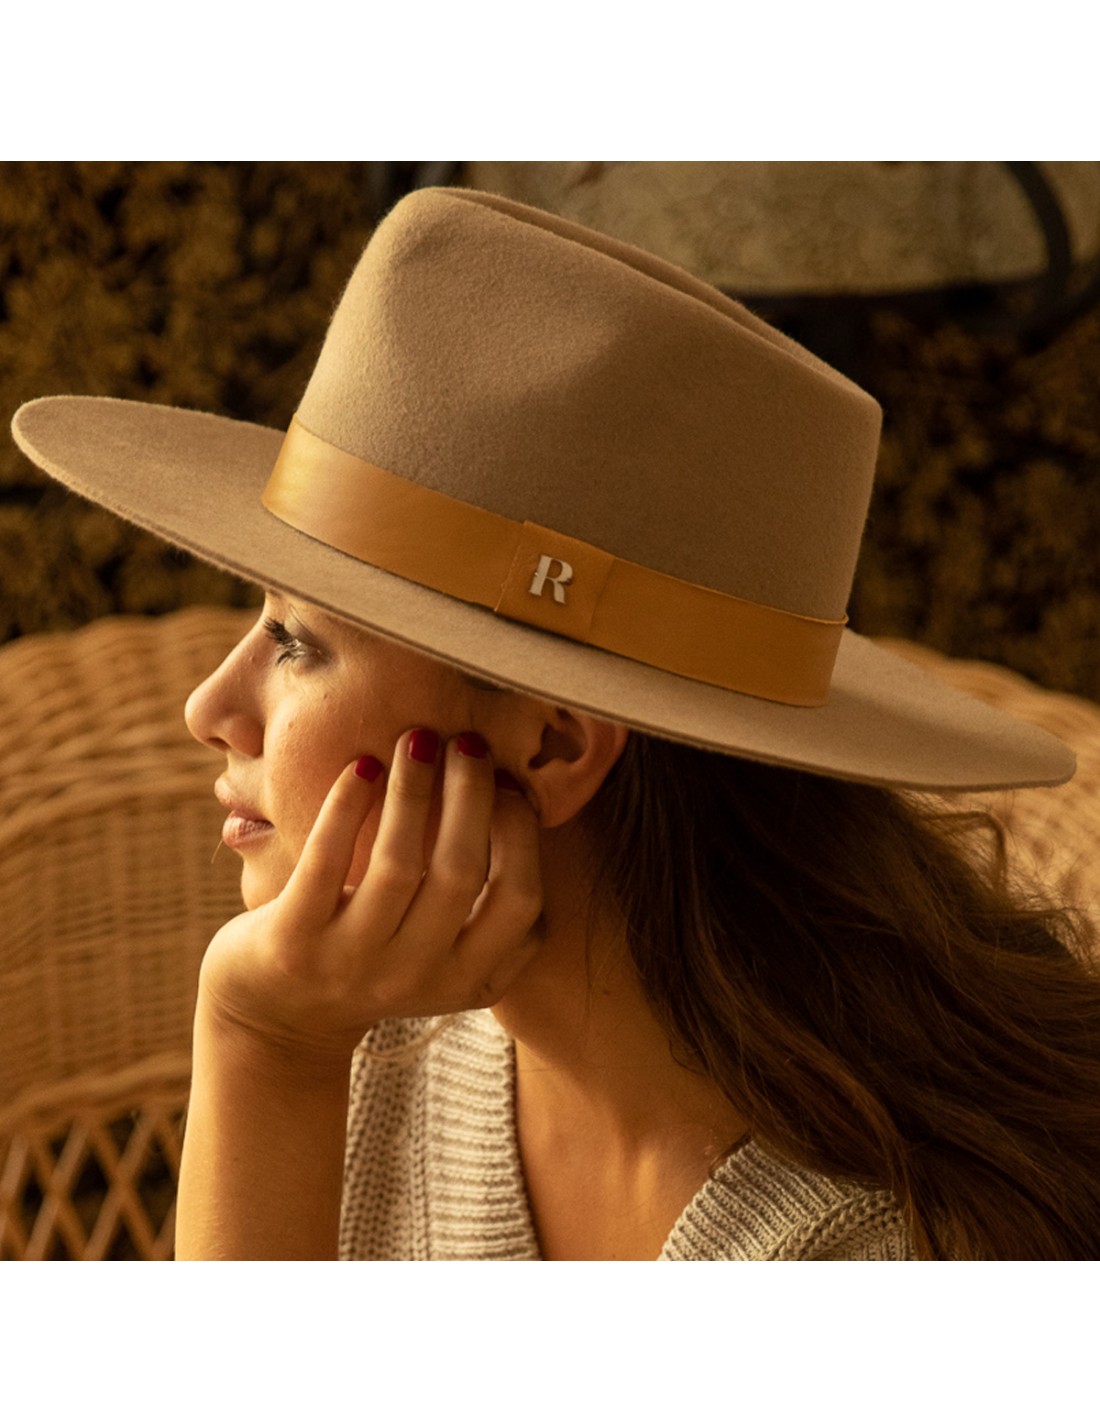 Wollfilz-Fedora-Hut in der Farbe Camel kaufen Denver - Raceu Hats